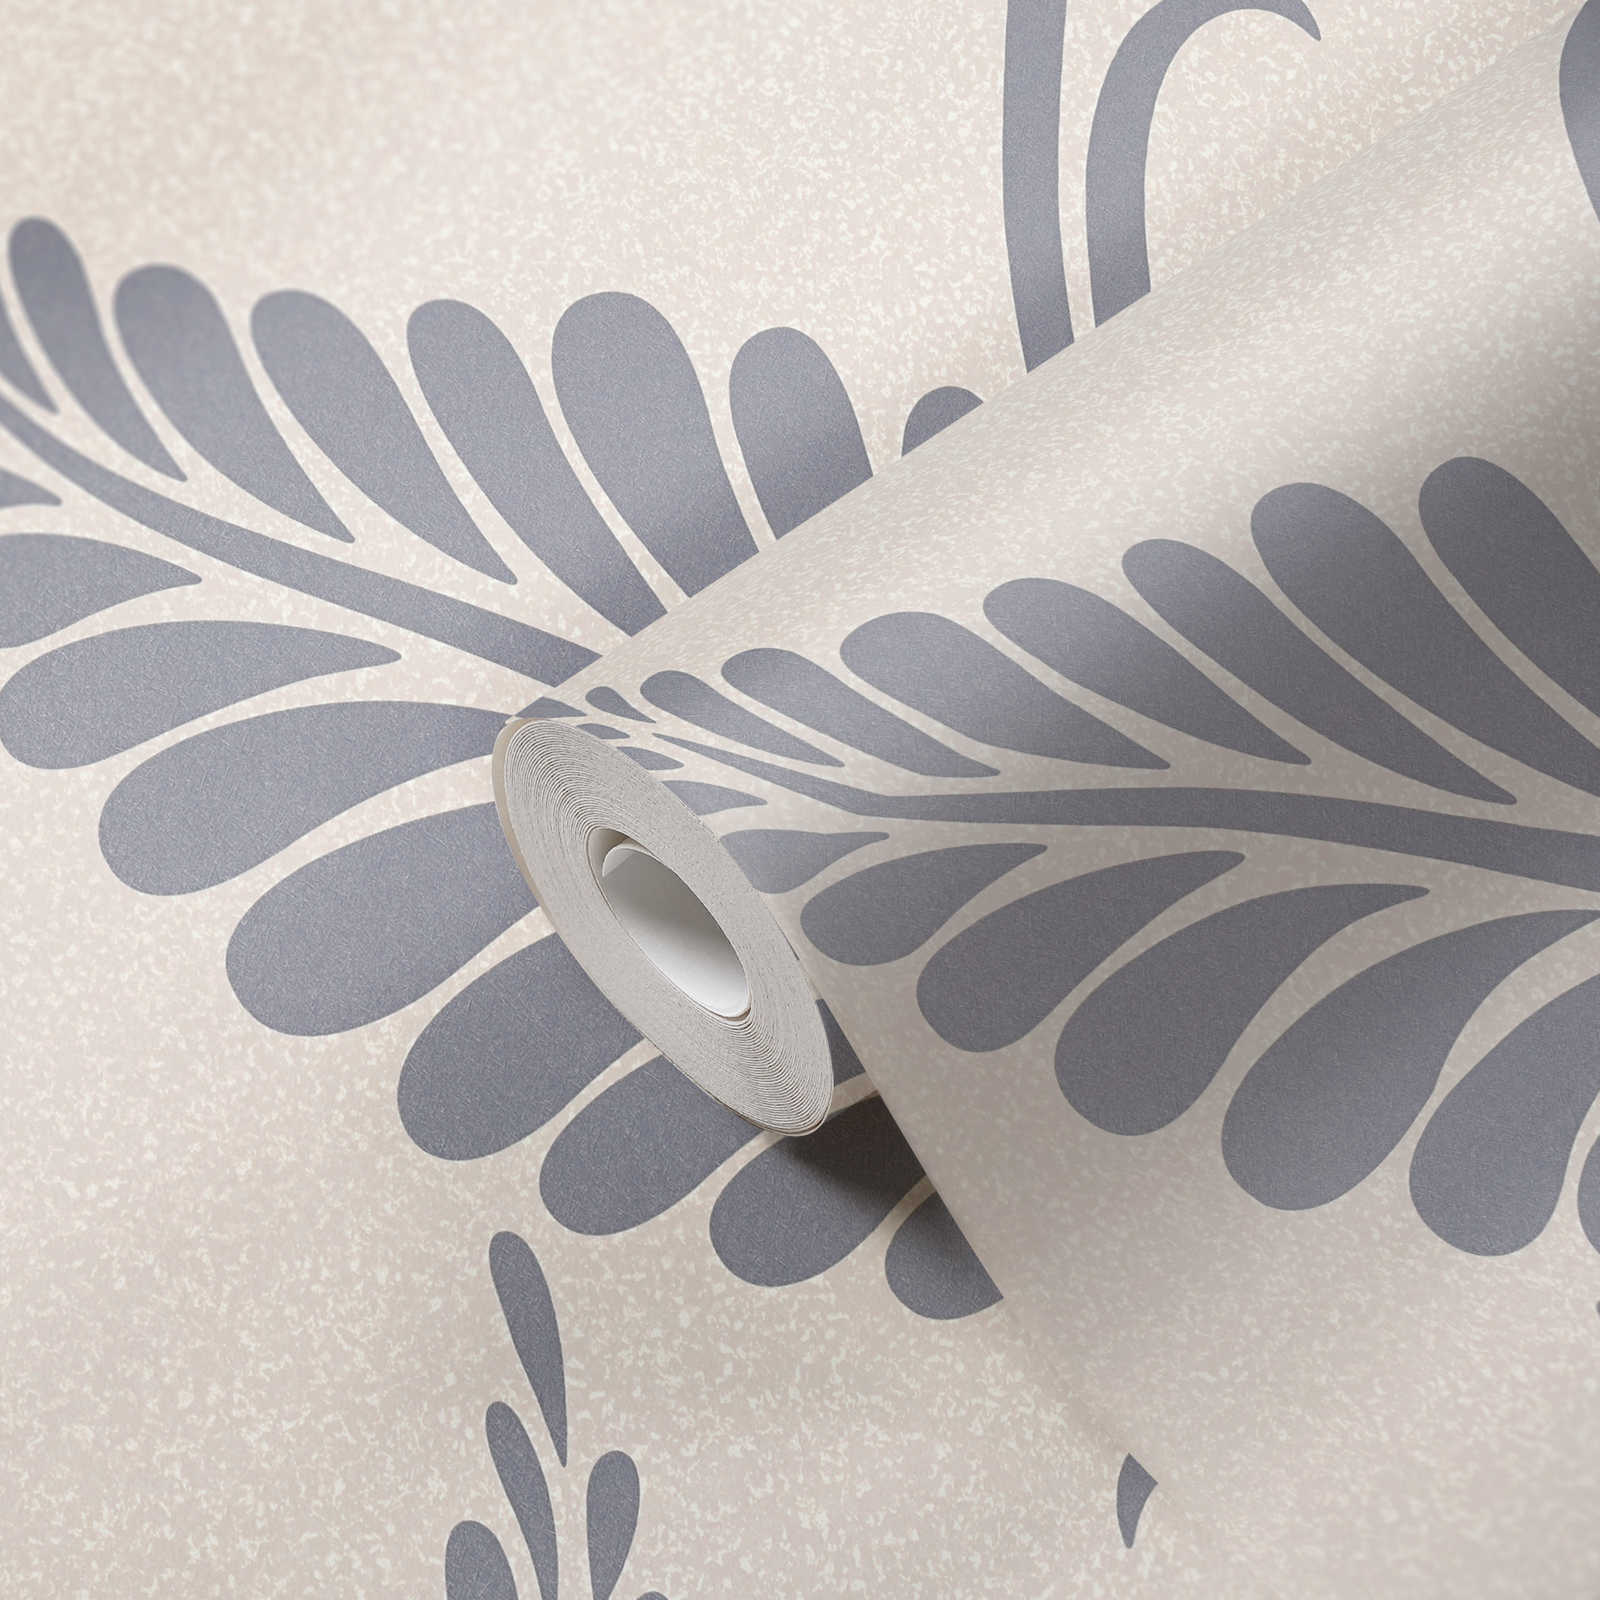             Papel pintado con hojas en estilo floral brillante - Greige, Plata
        